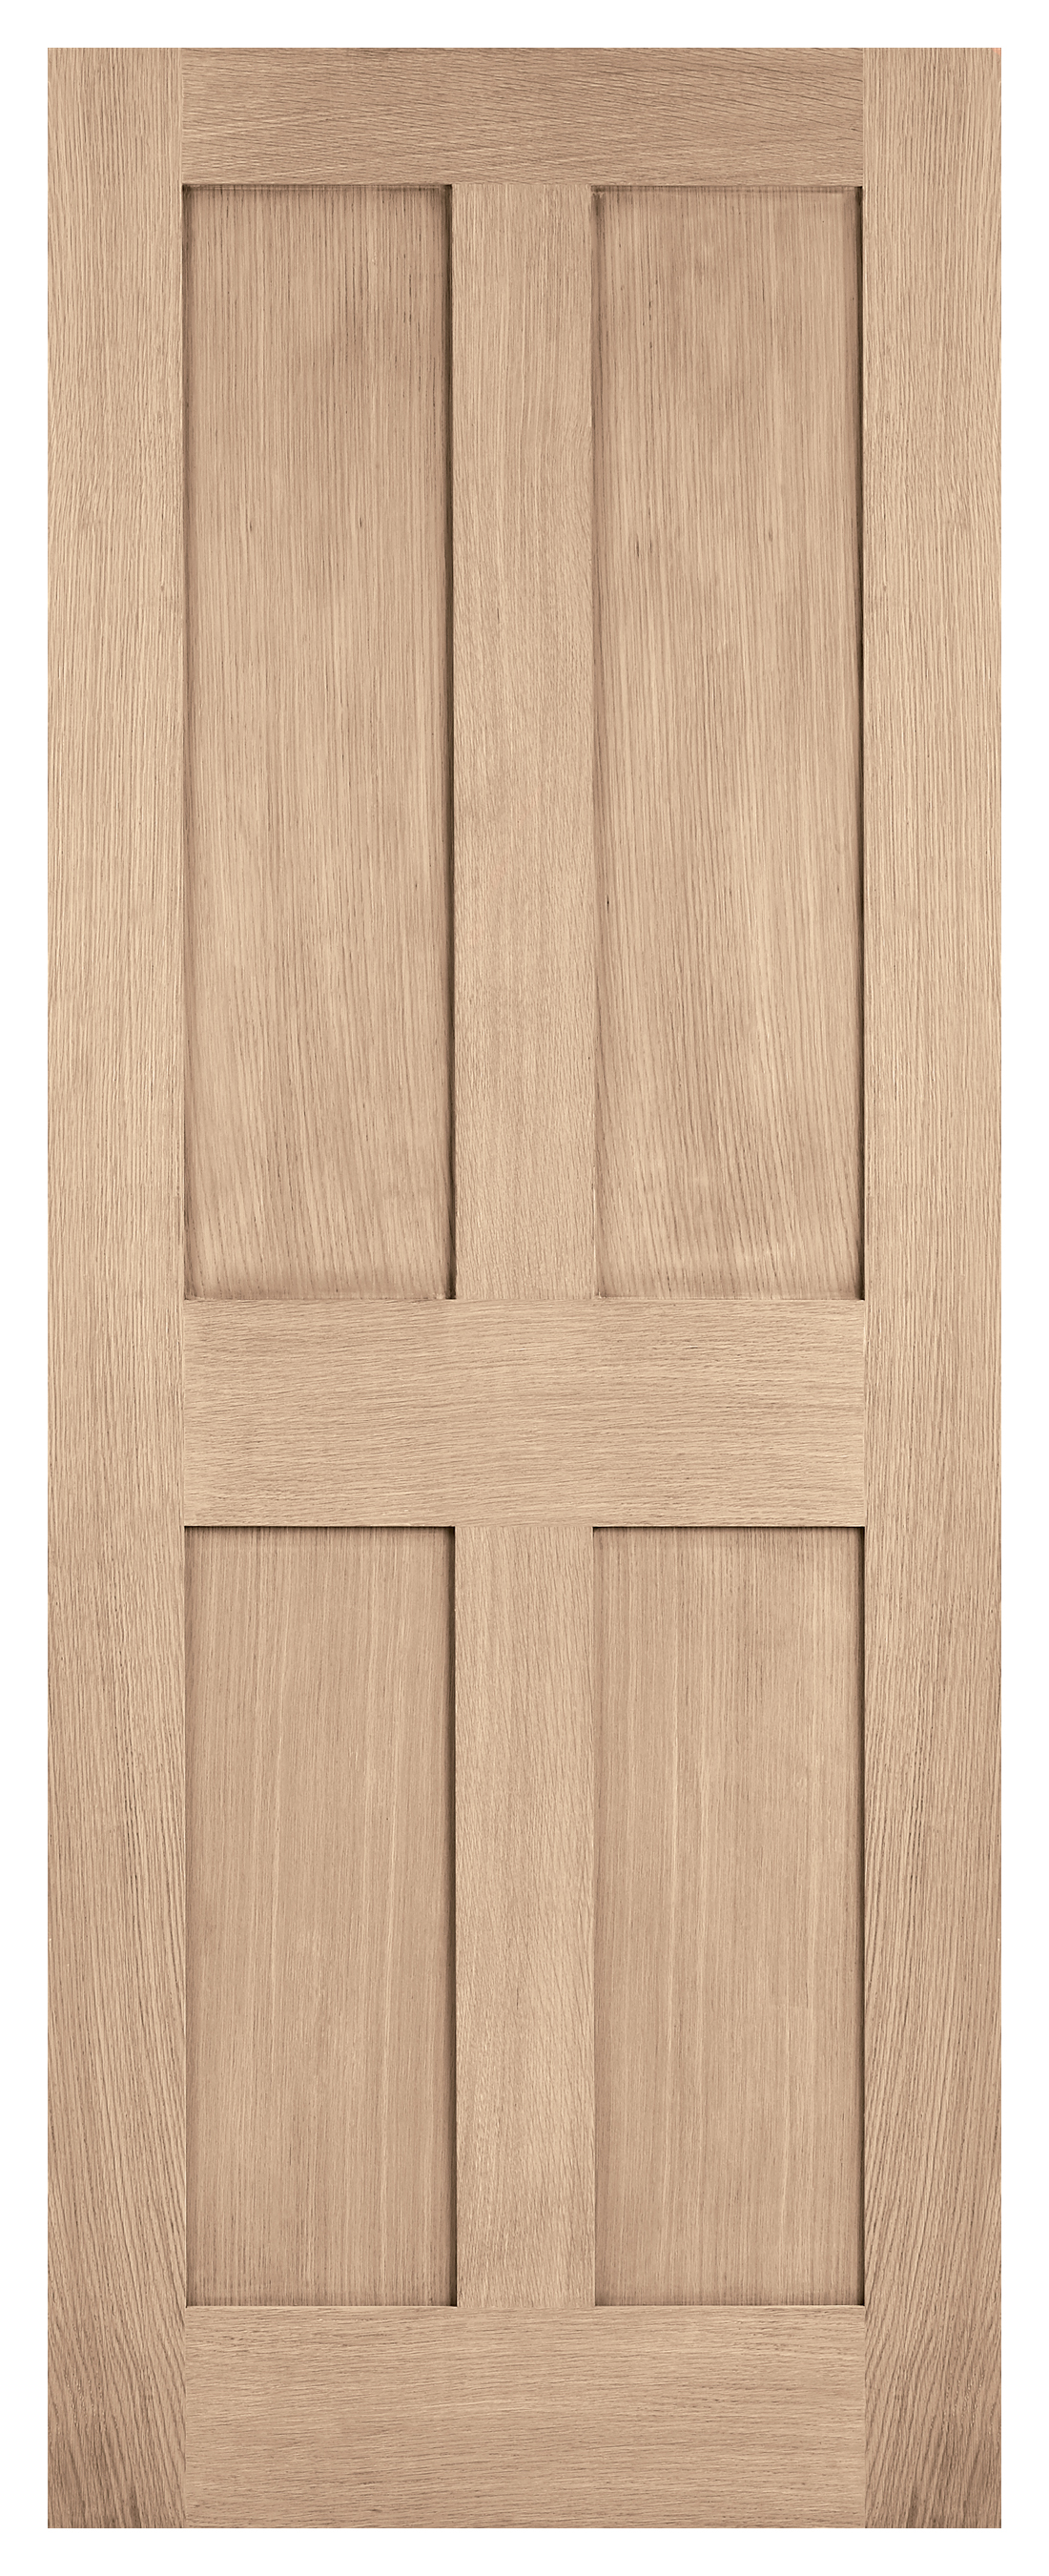 Image of LPD Internal London 4 Panel Pre-finished Oak FD30 Fire Door - 762 x 1981mm